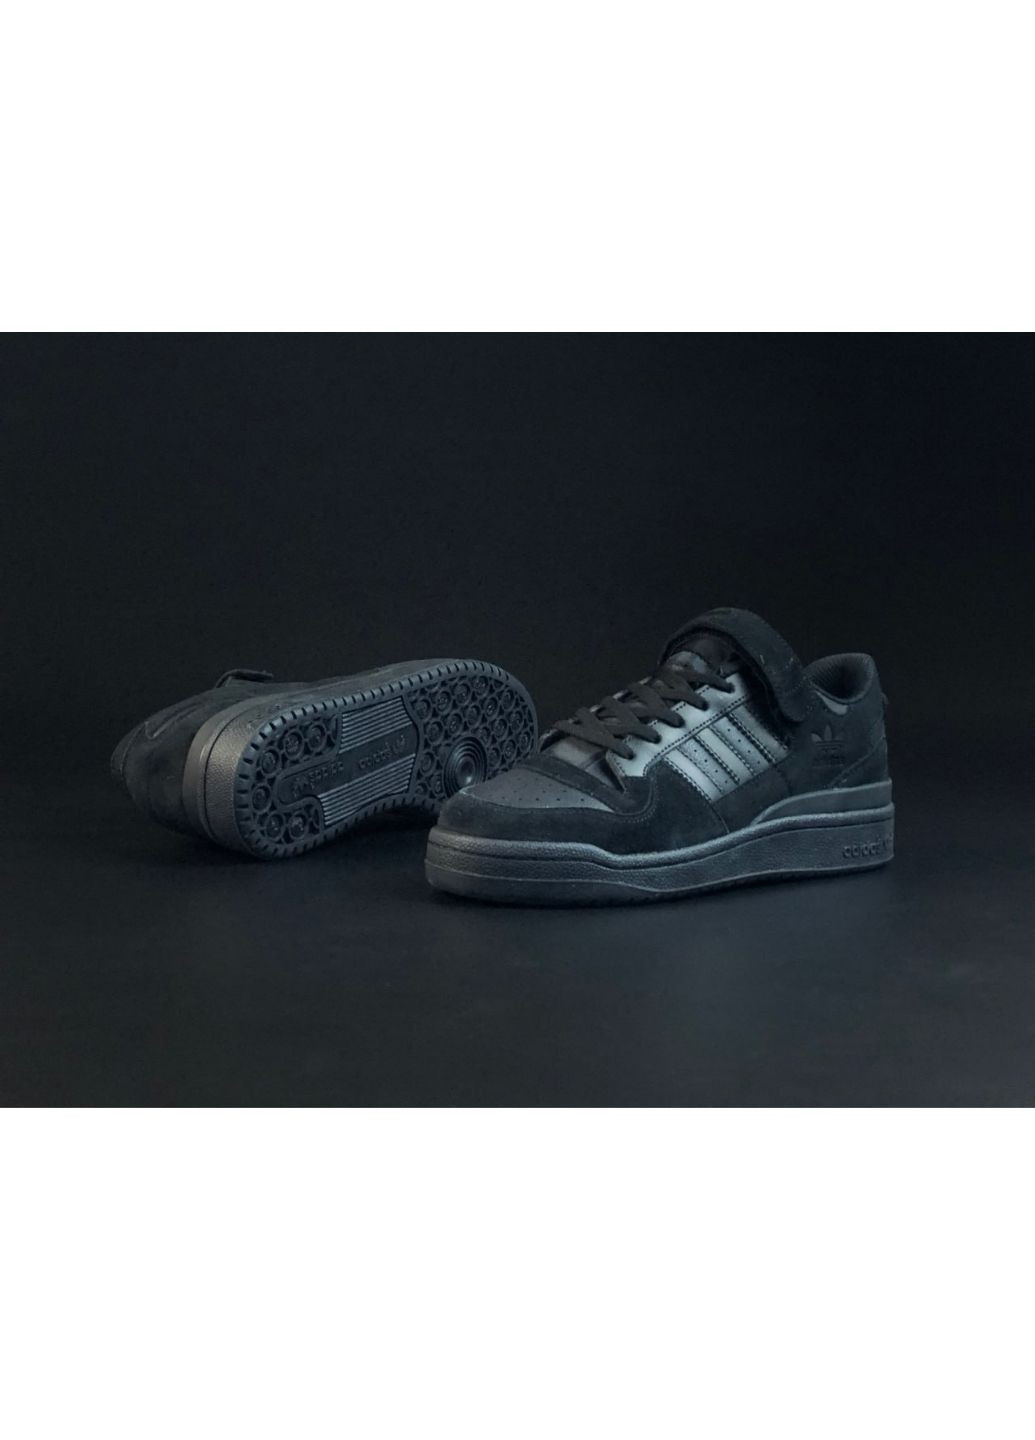 Черные демисезонные мужские кроссовки черные «no name» adidas Forum Low